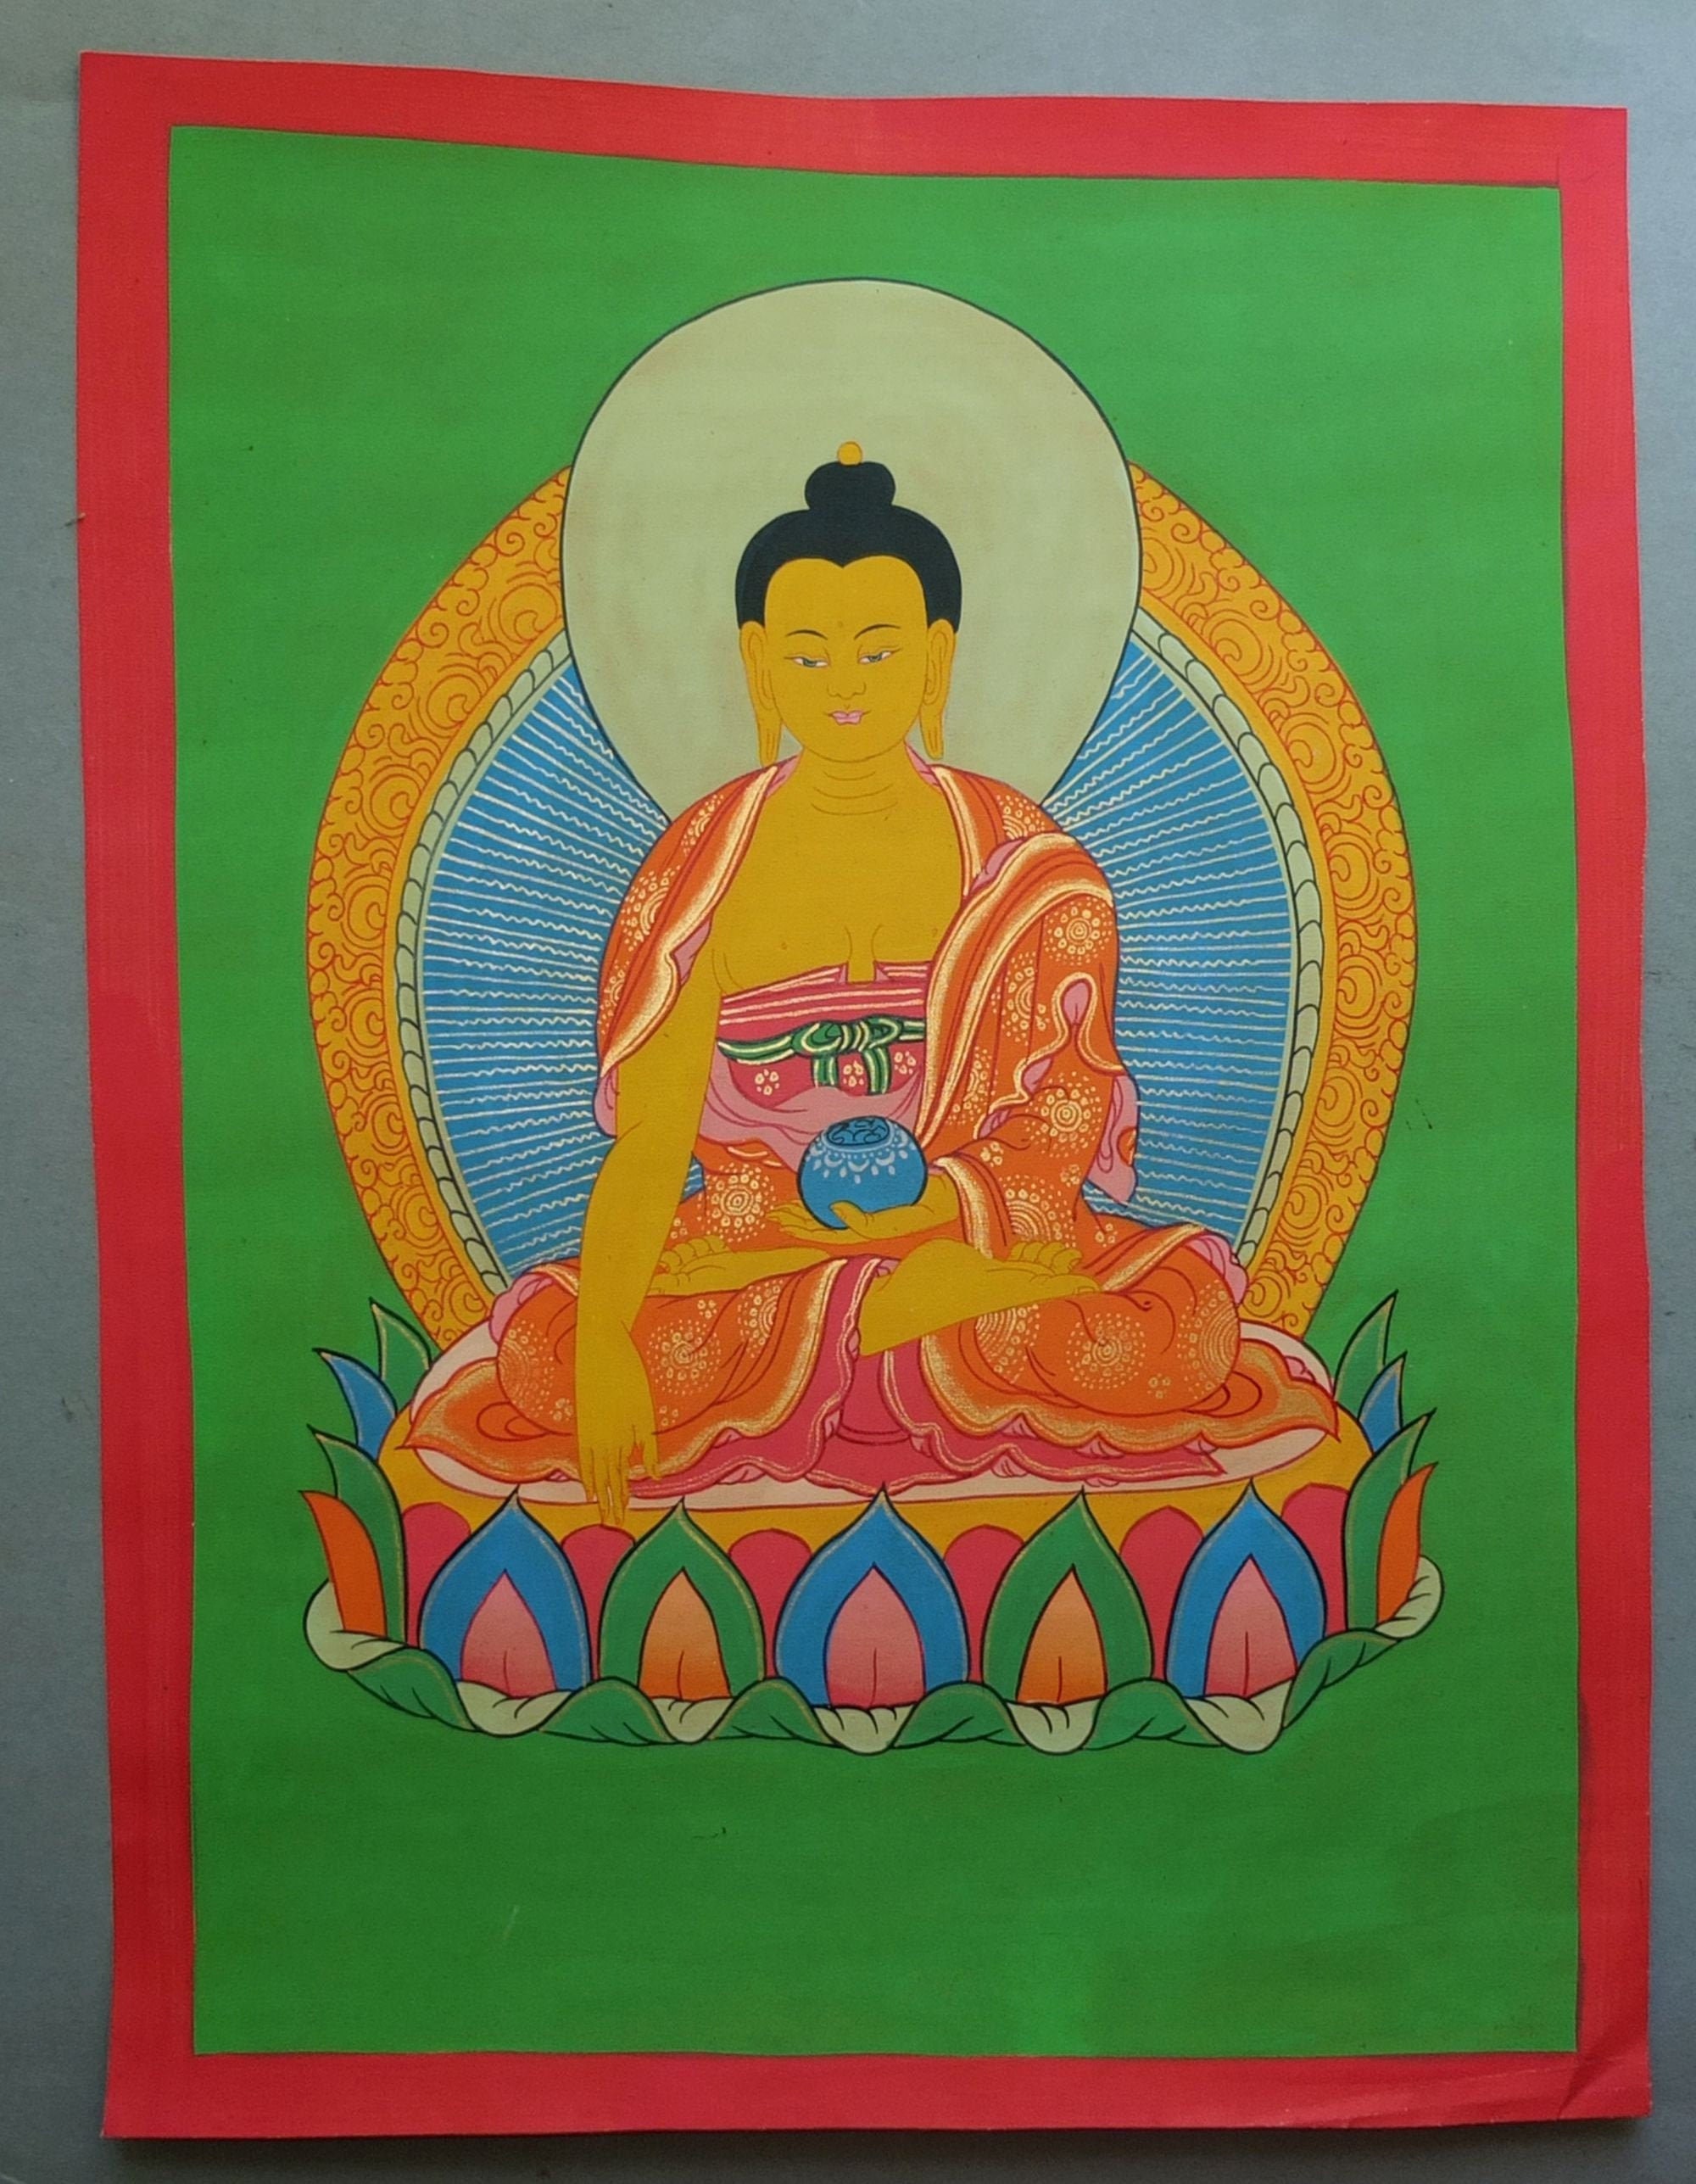 Padmasambhava Thangka - Buddhist Images